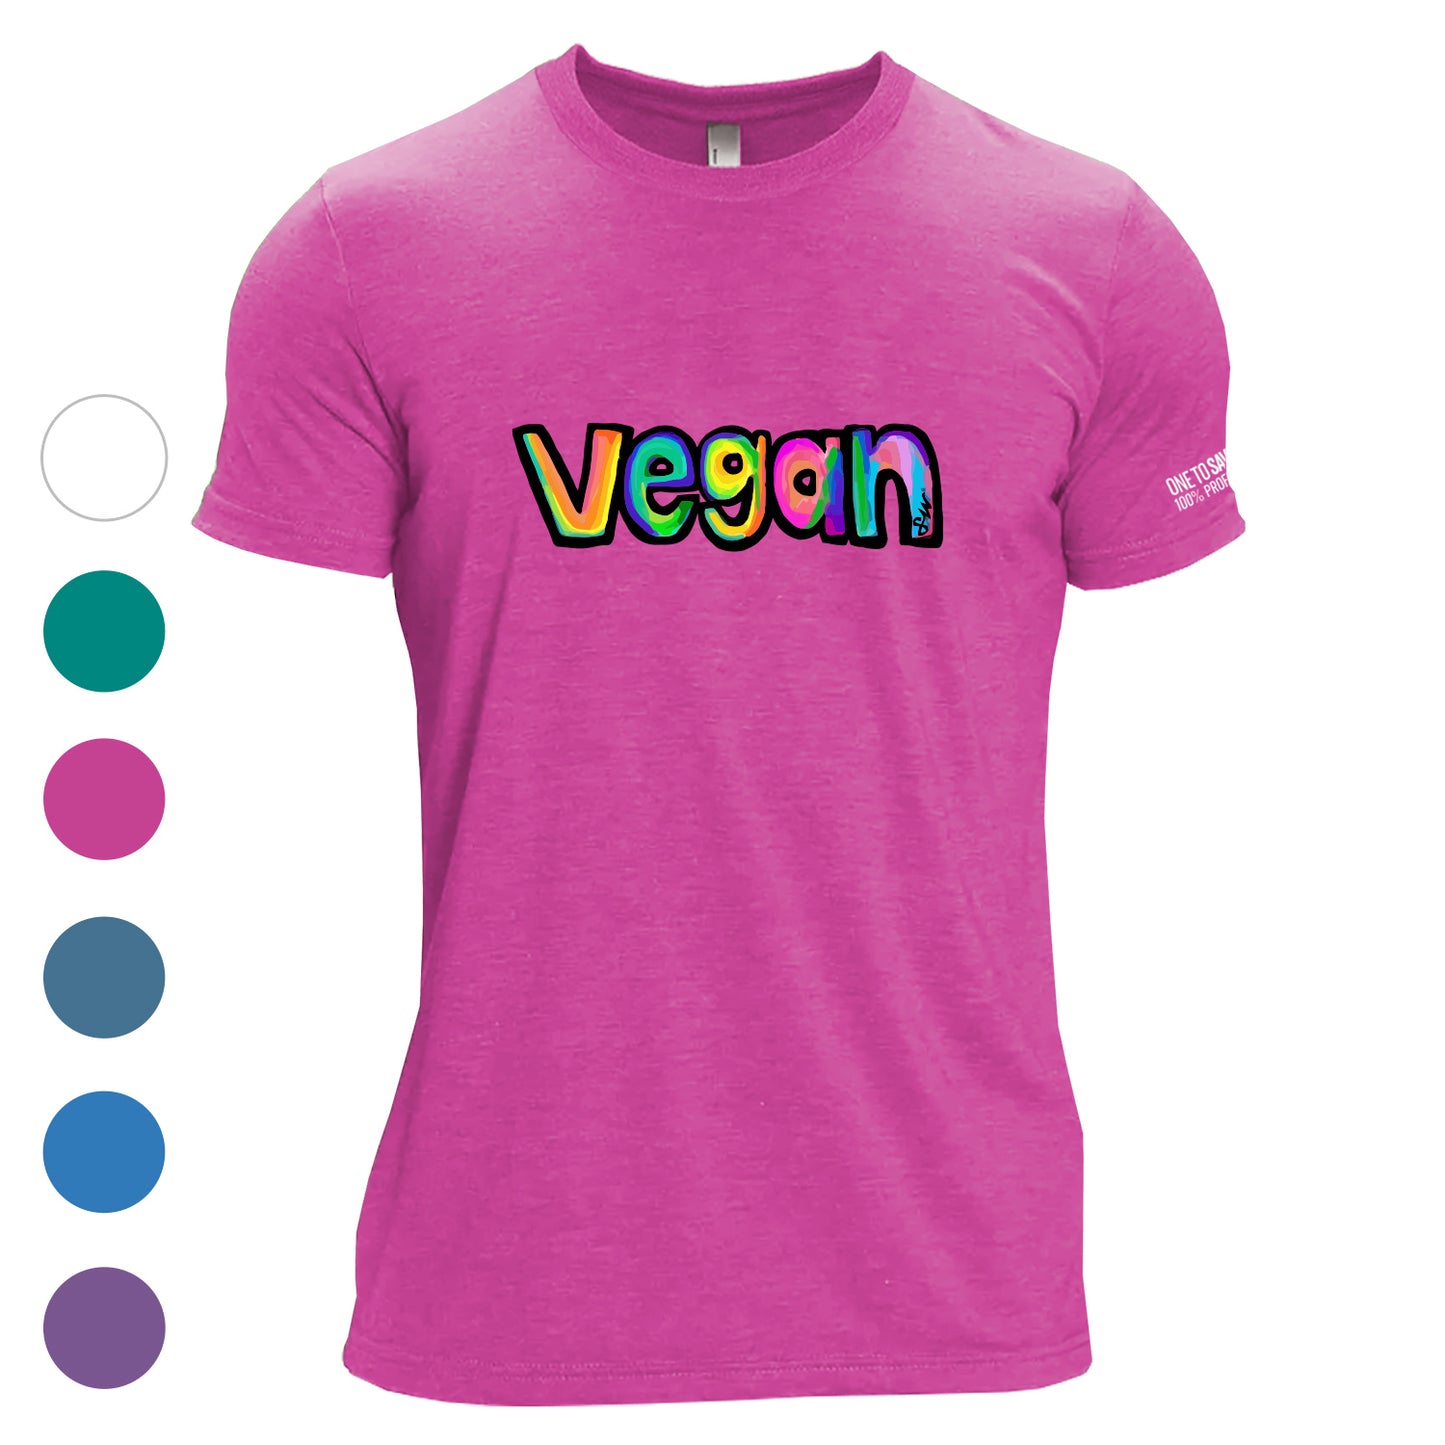 Color Splash Vegan Unisex Tri-Blend T-Shirt - Available in 6 Colors!